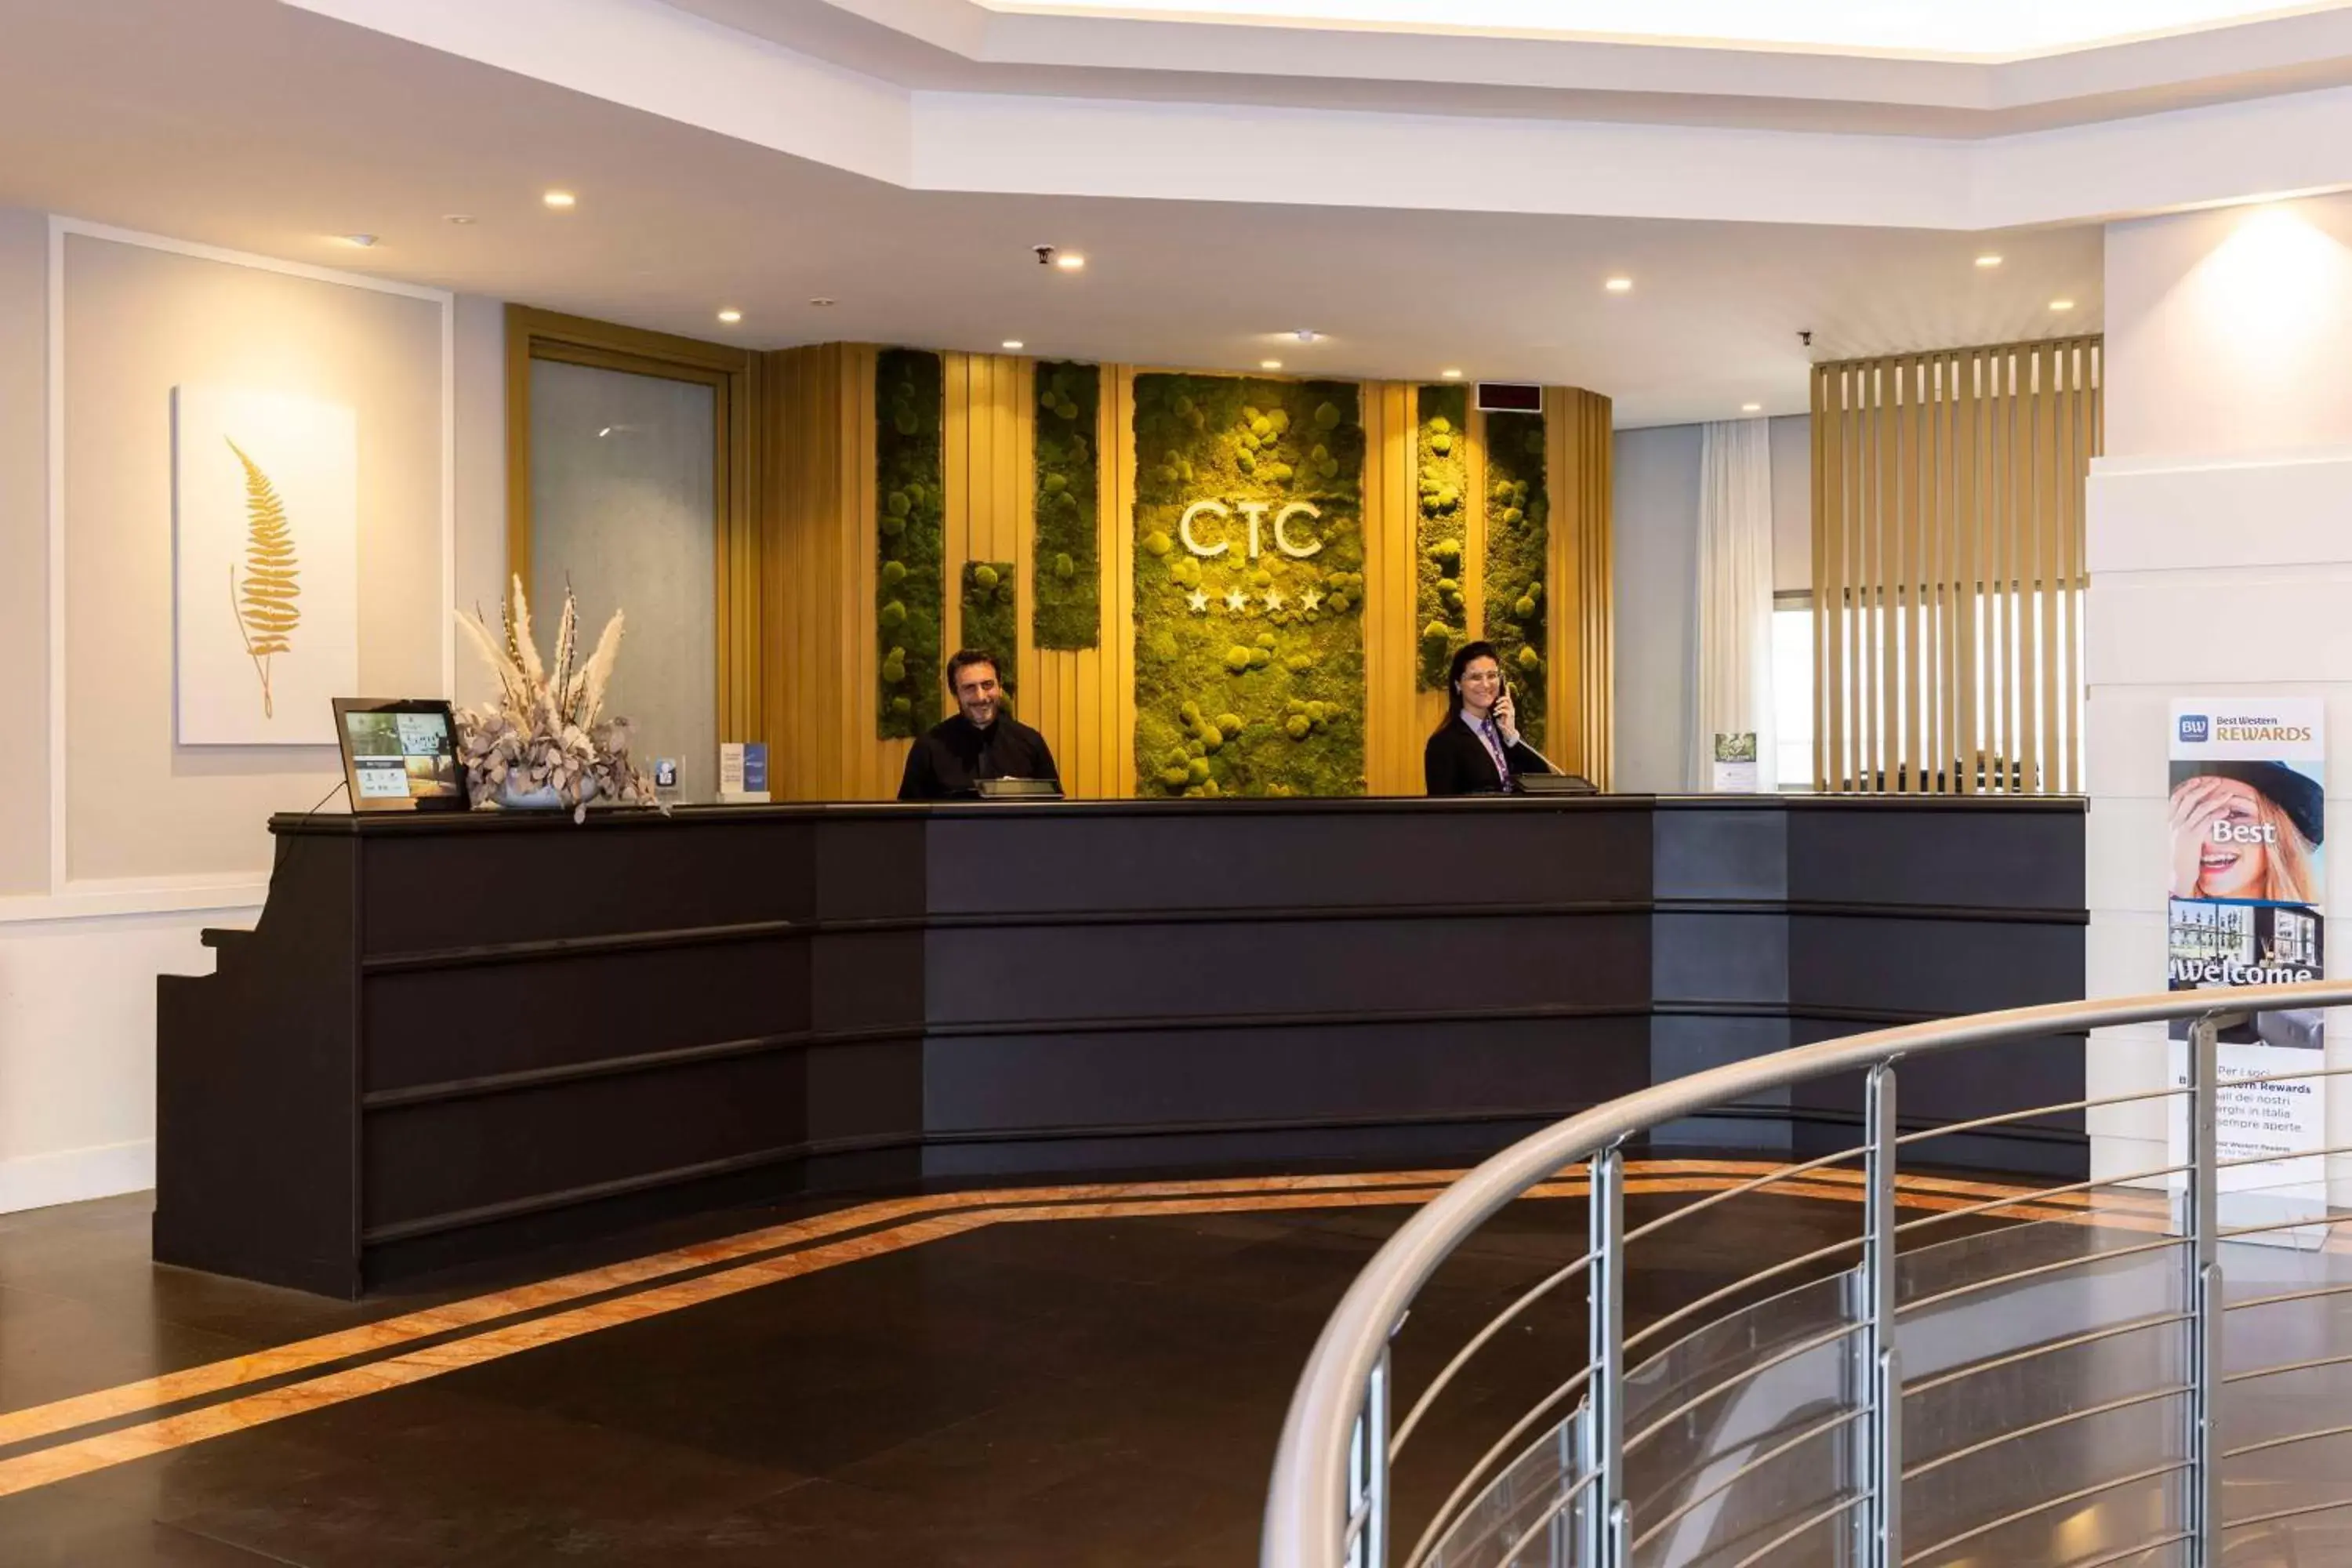 Lobby or reception, Lobby/Reception in Best Western Ctc Hotel Verona